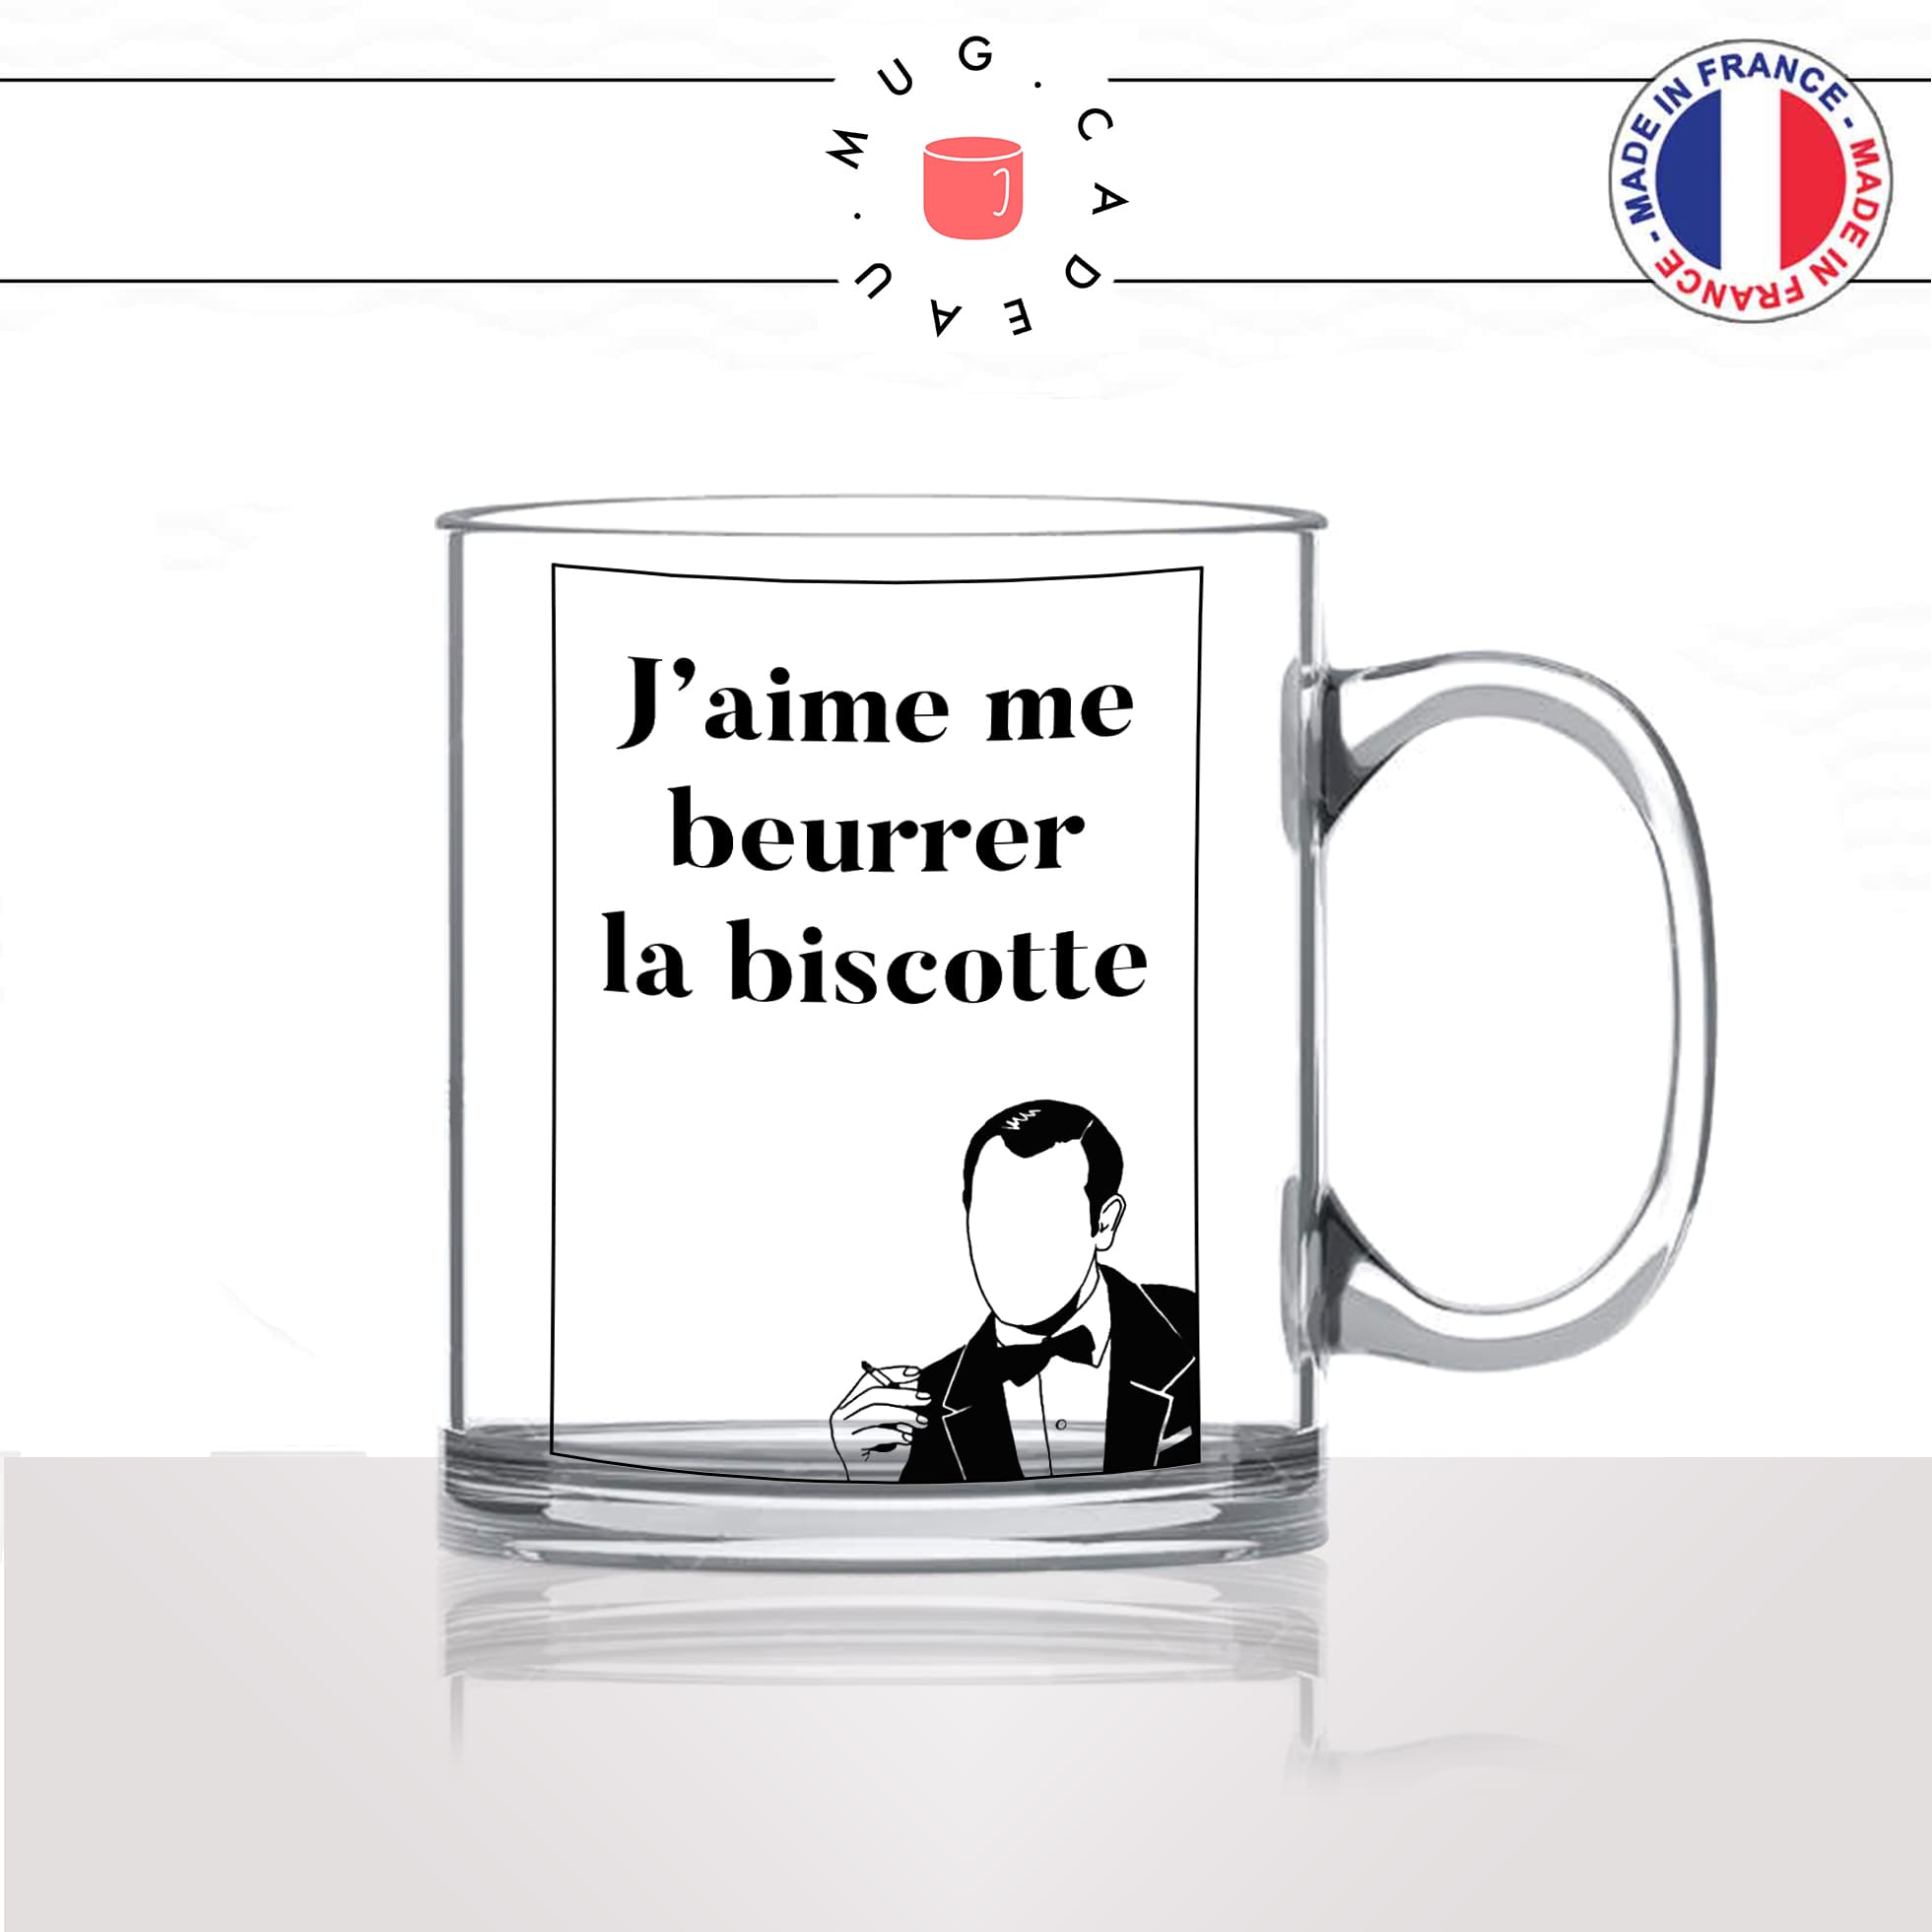 mug-tasse-en-verre-transparent-glass-film-francais-oss117-jaime-me-beurrer-la-biscotte-matin-reveil-humour-idée-cadeau-fun-cool-café-thé2